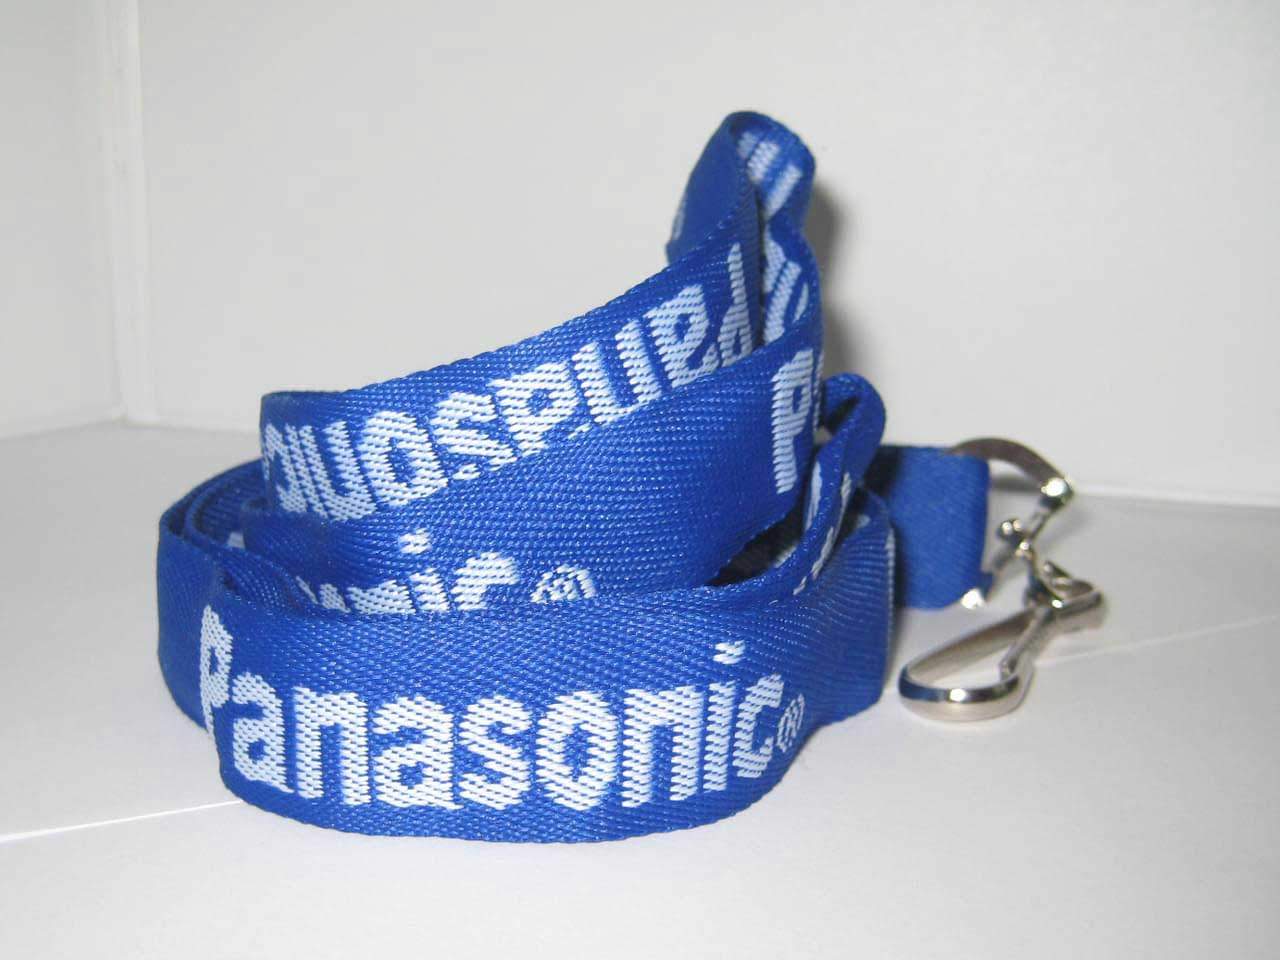 Woven Lanyard with Panasonic logo